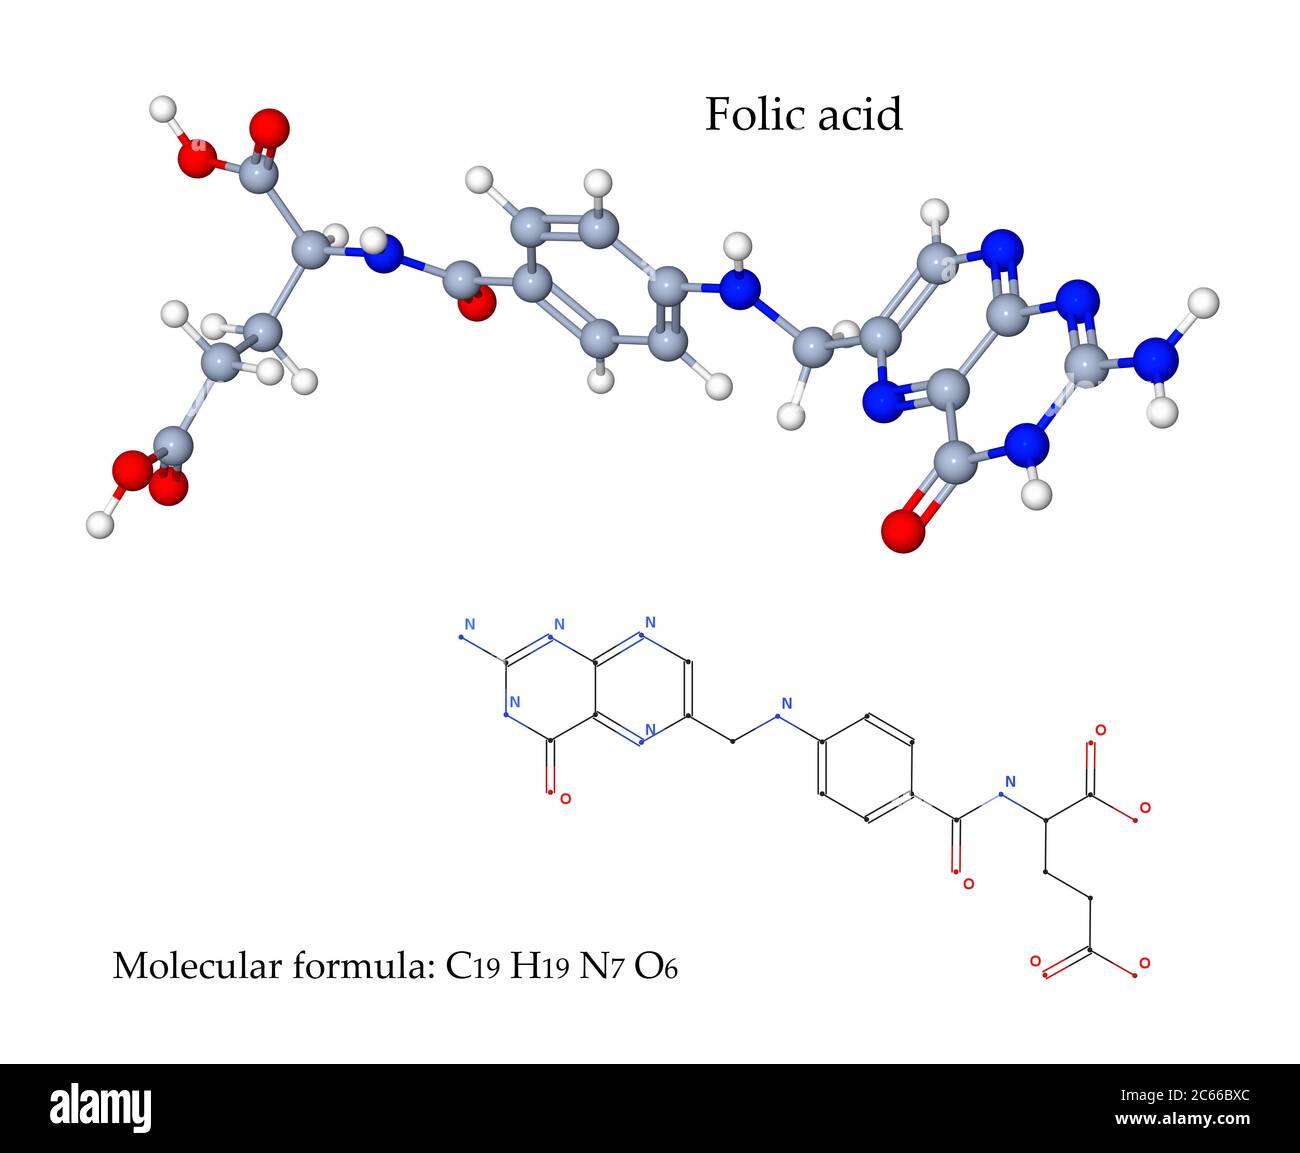 L'acido folico o il folato o la vitamina B9 è essenziale per il corpo per fare DNA e RNA e metabolizzare gli amminoacidi, che sono necessari per la divisione cellulare Foto Stock